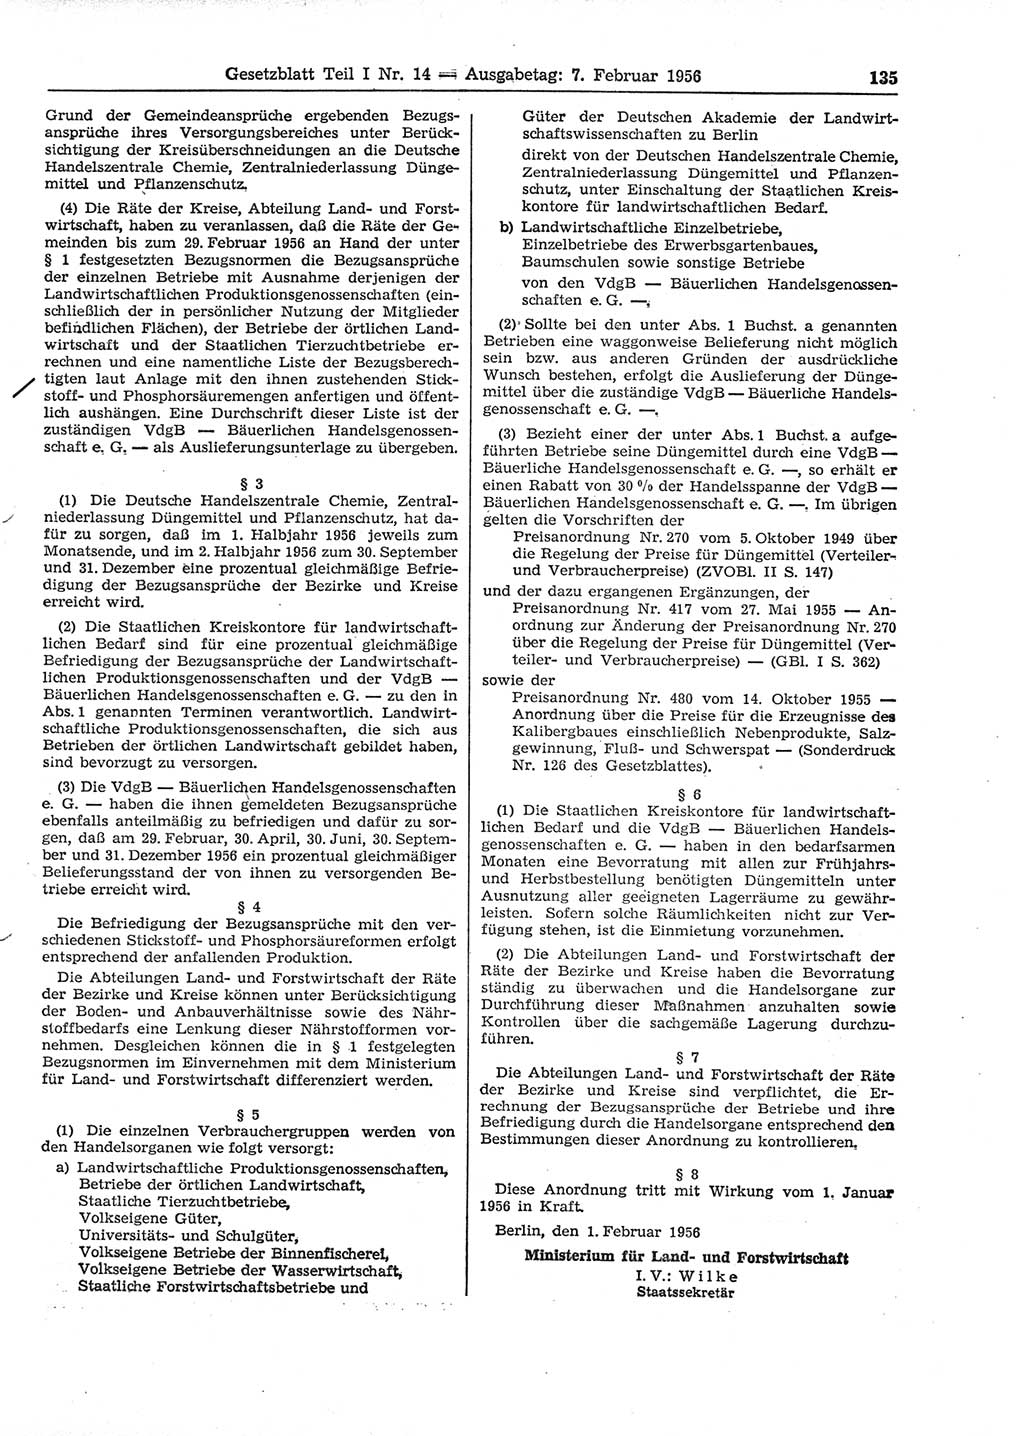 Gesetzblatt (GBl.) der Deutschen Demokratischen Republik (DDR) Teil Ⅰ 1956, Seite 135 (GBl. DDR Ⅰ 1956, S. 135)